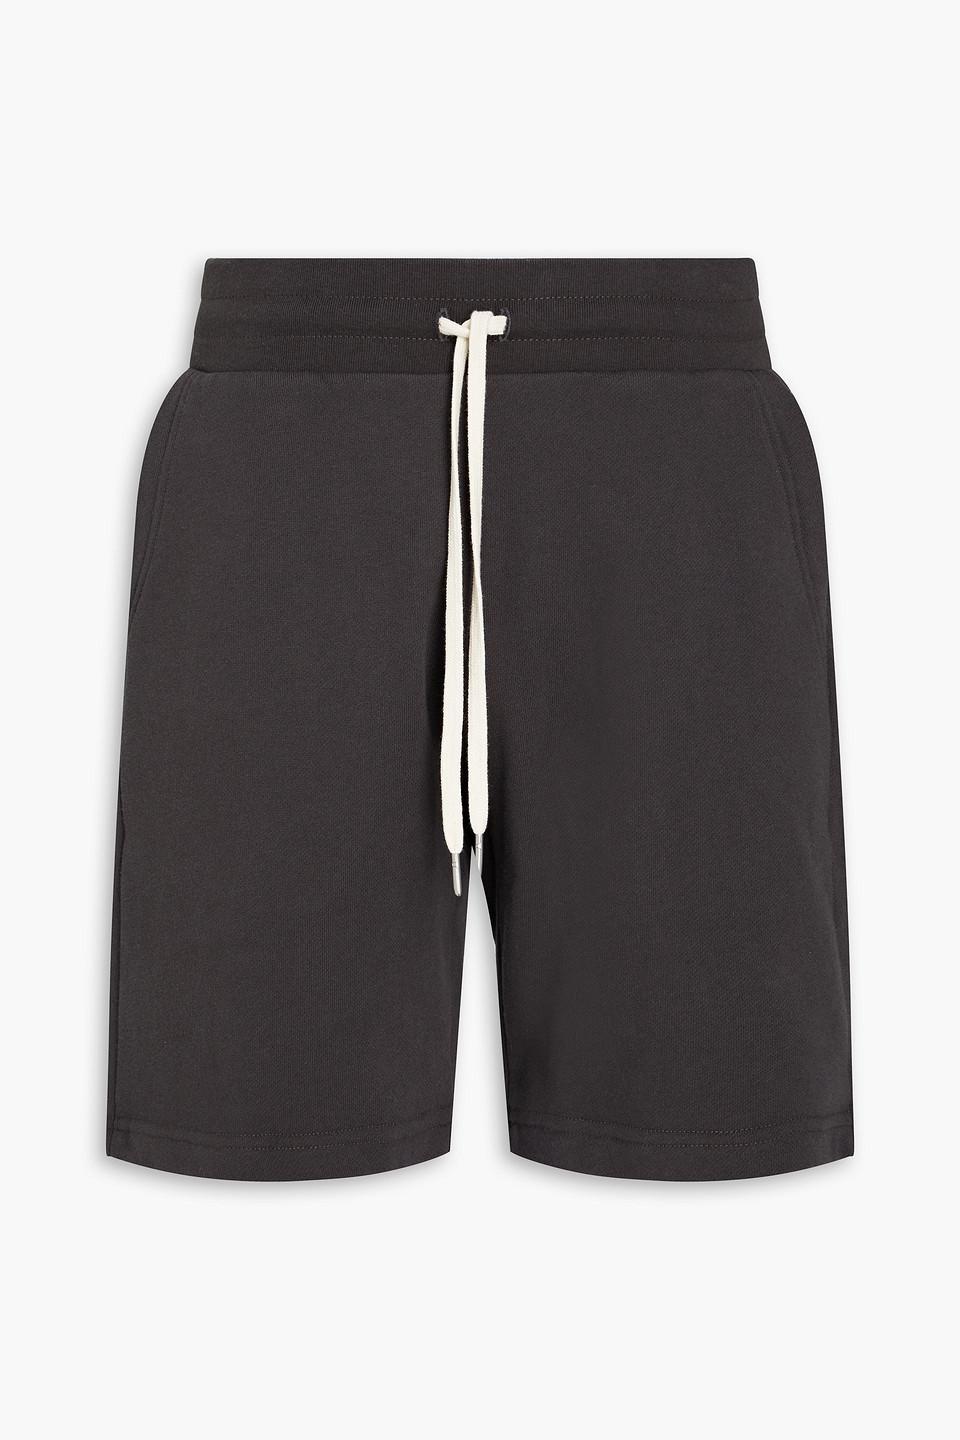 John Elliott Crimson French Cotton-terry Shorts in Black for Men